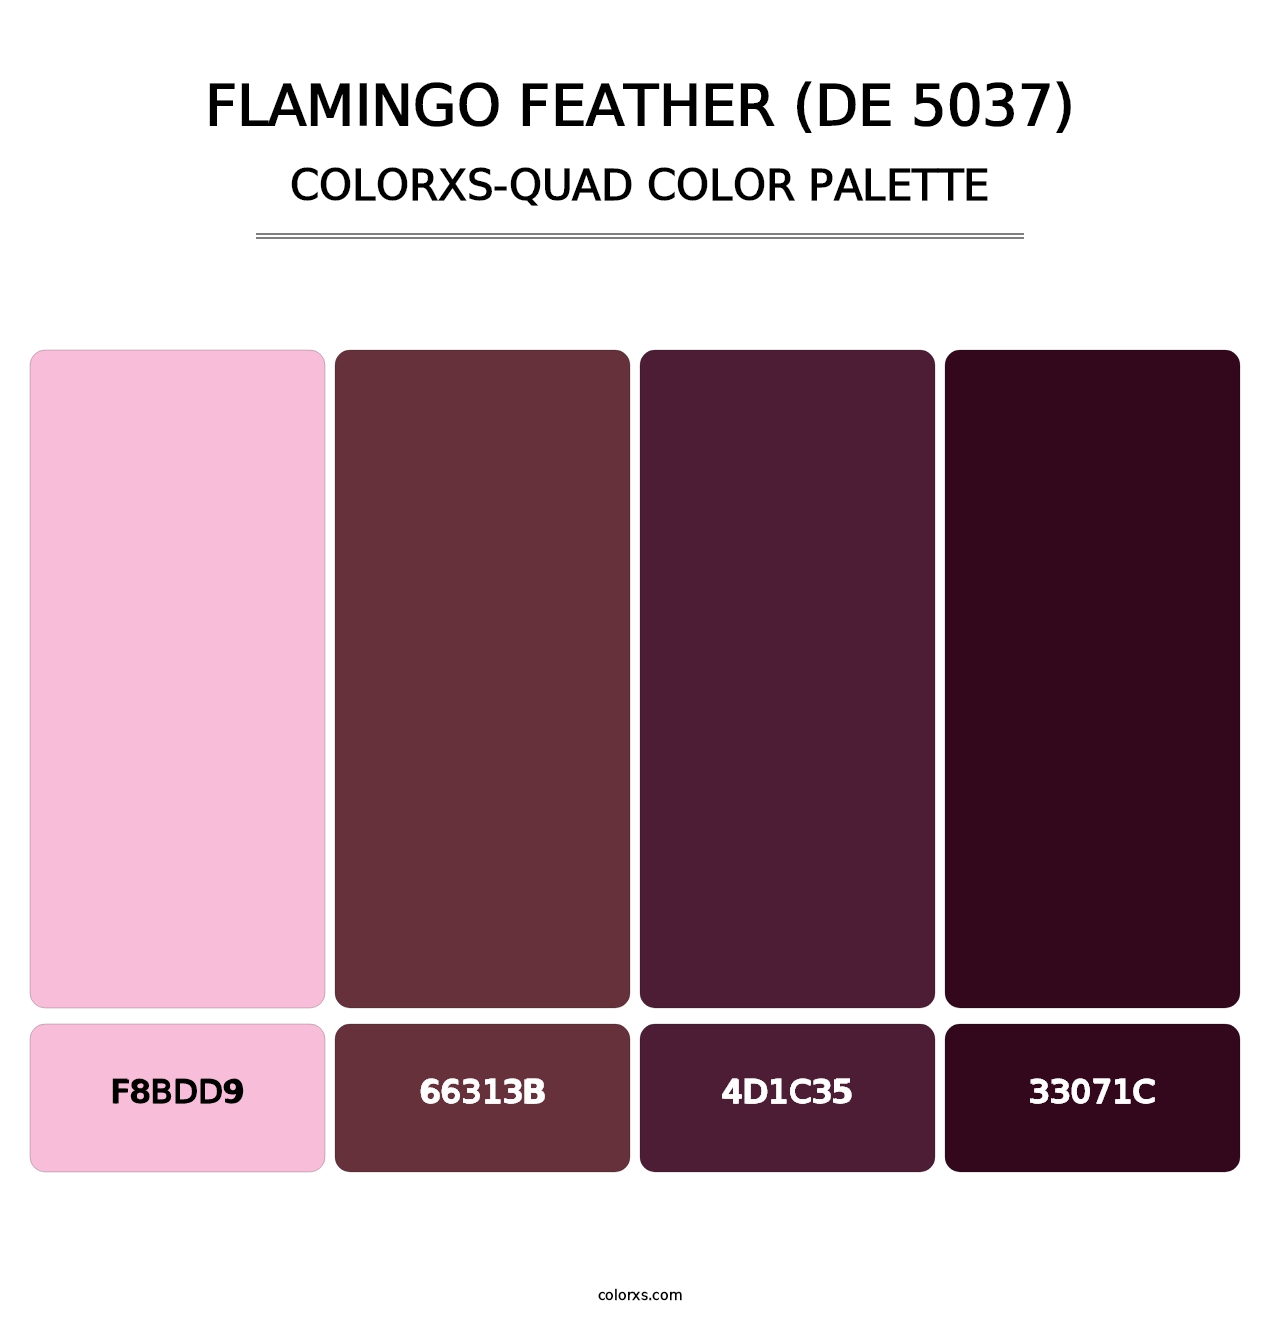 Flamingo Feather (DE 5037) - Colorxs Quad Palette